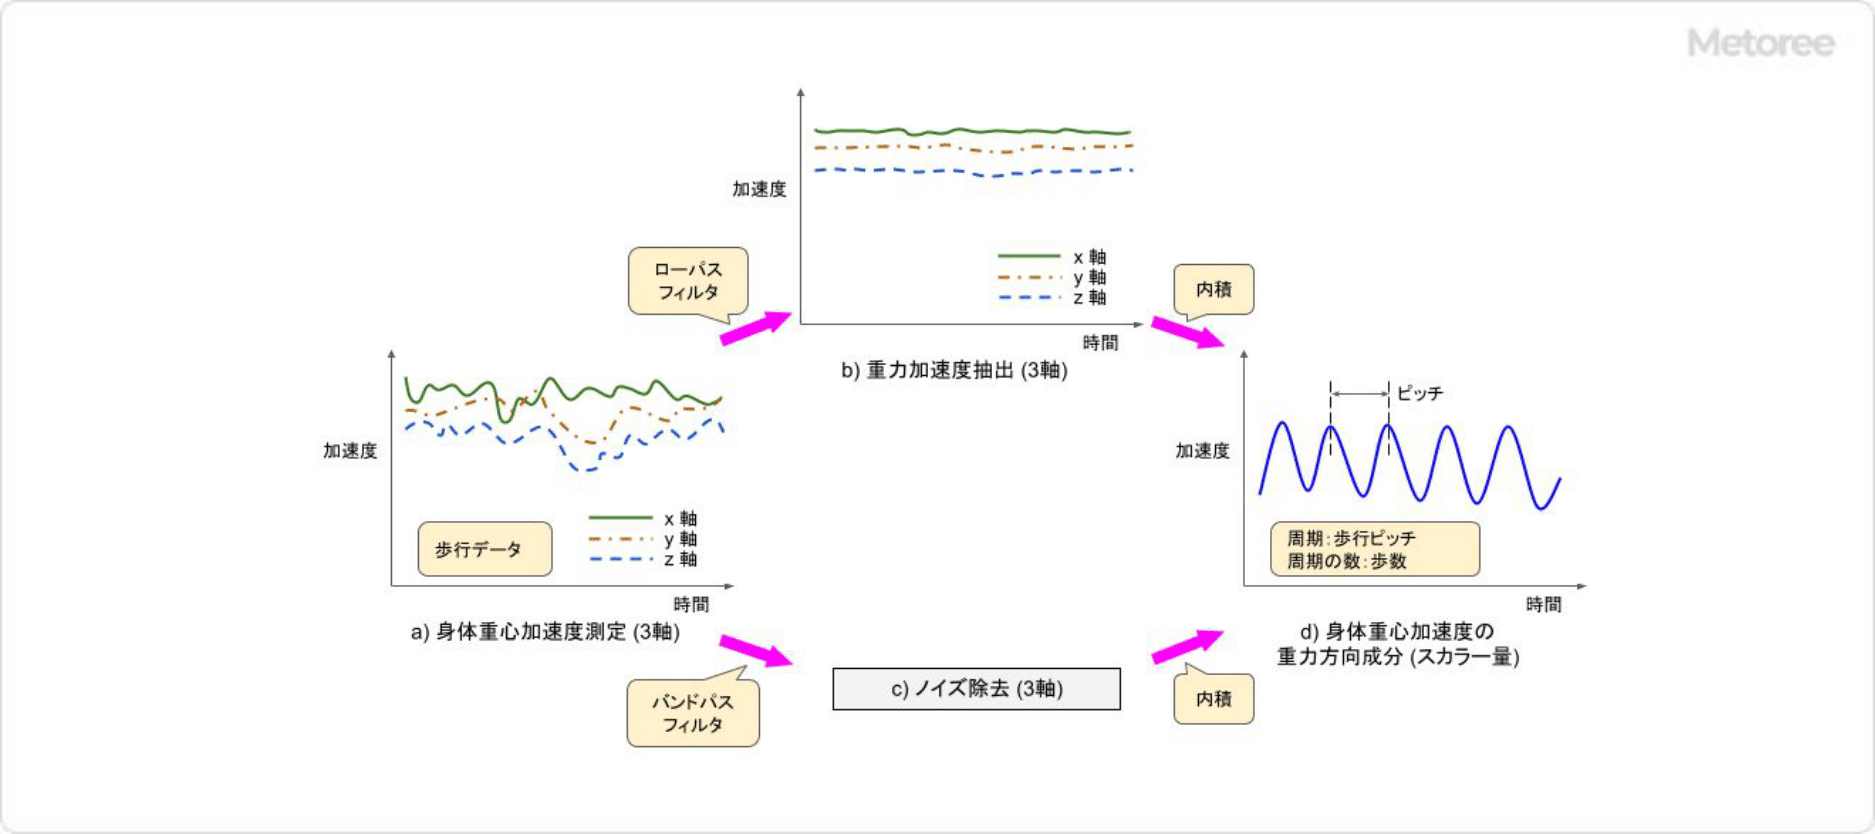 3軸加速度センサー信号処理 (歩数計)